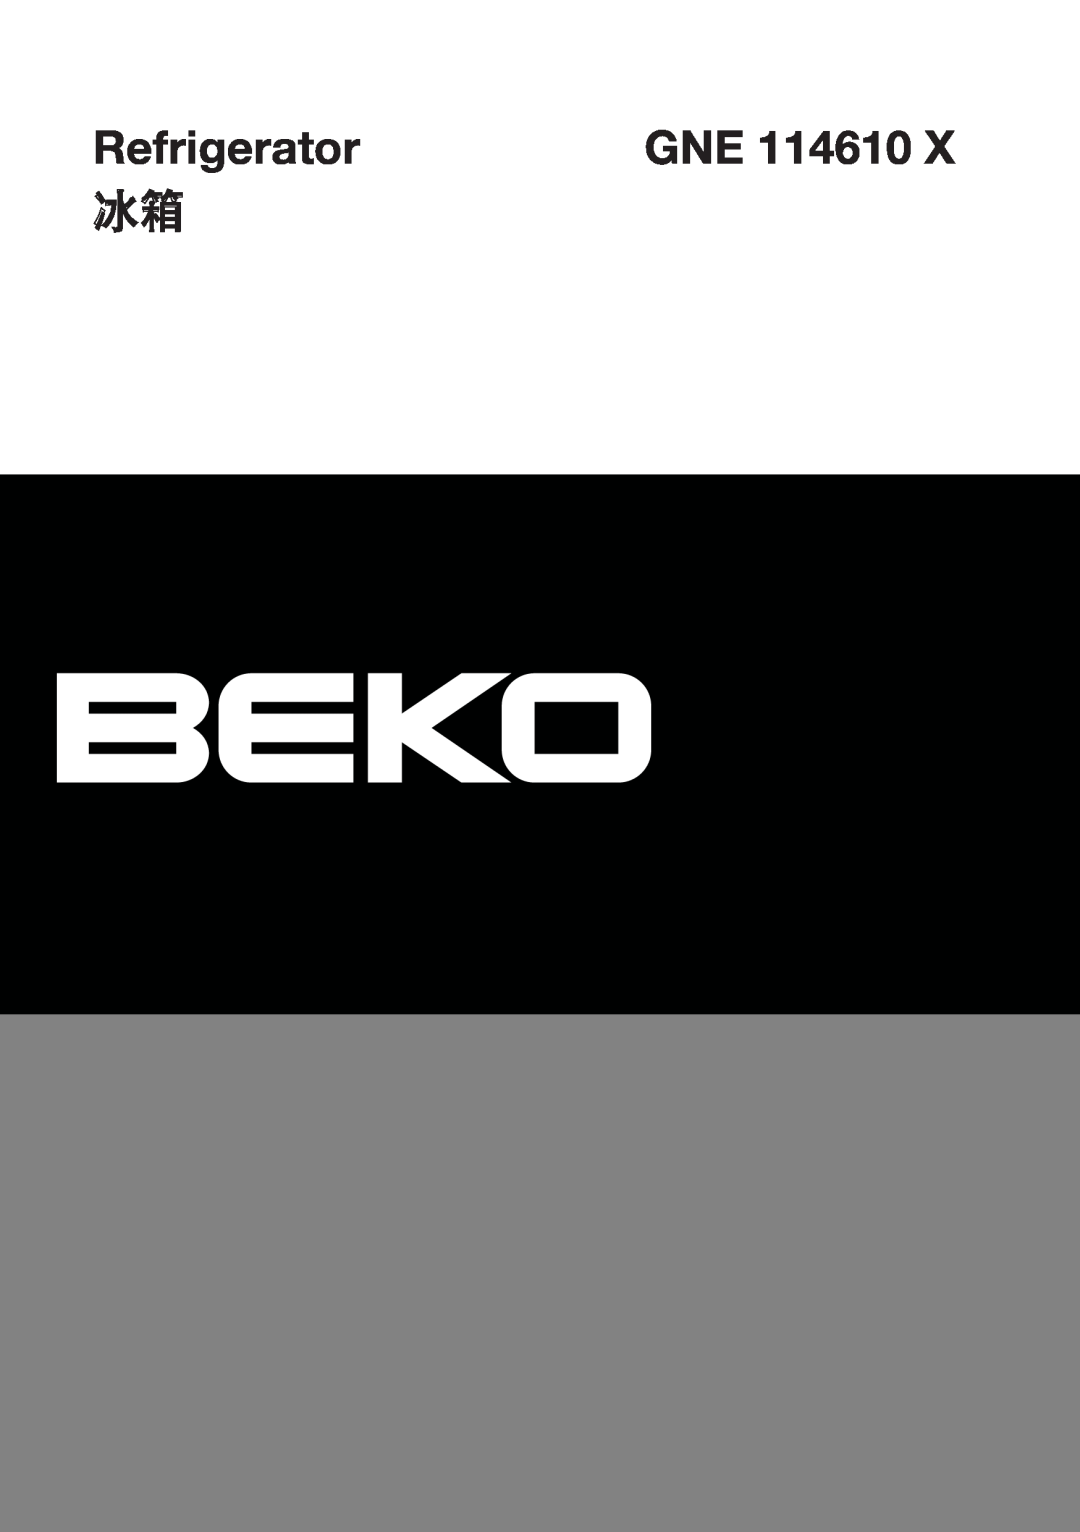 Beko GNE 114610 X manual Refrigerator 